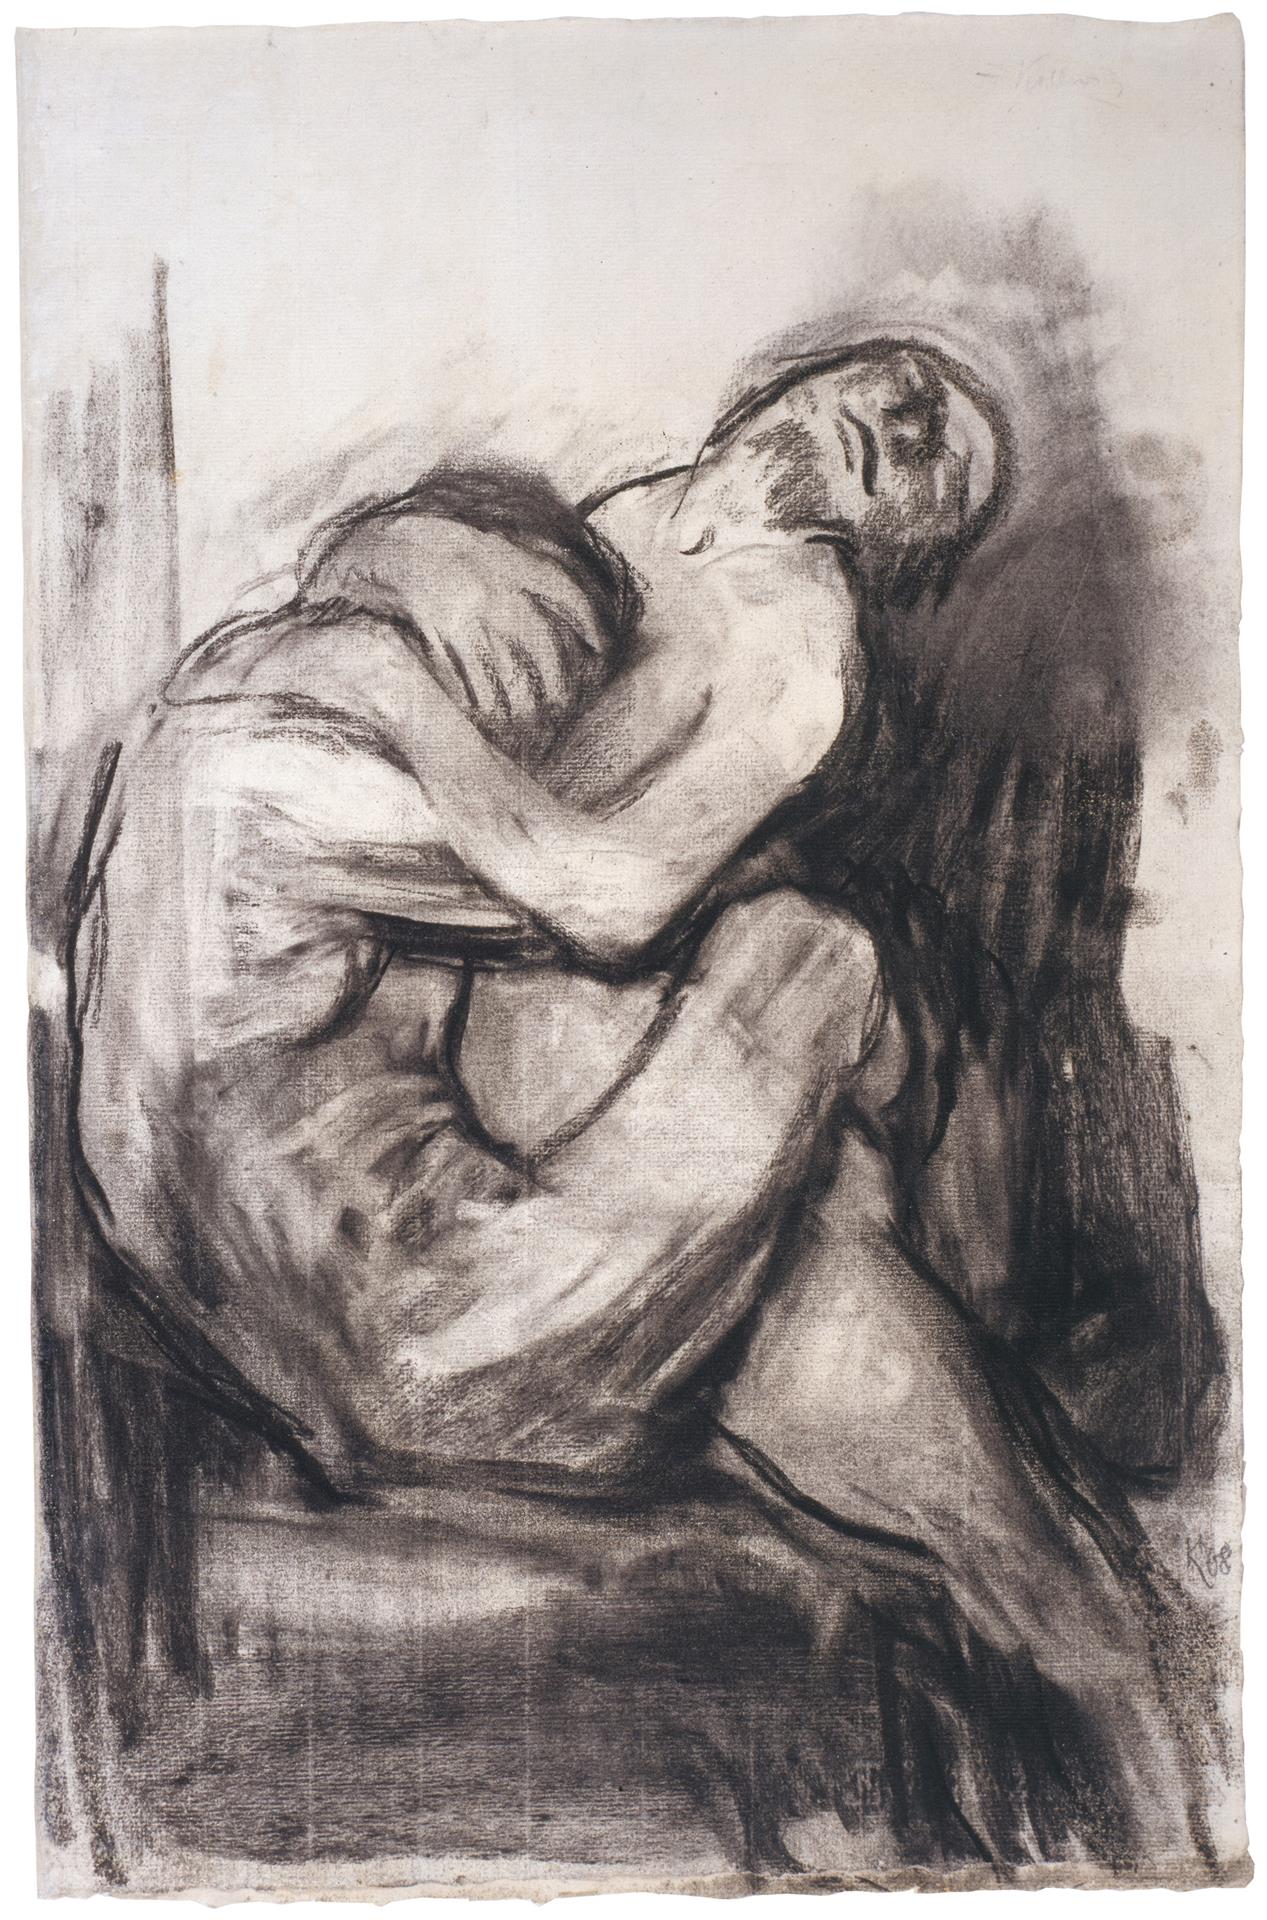 Käthe Kollwitz, Love Scene I, c 1909/10, charcoal, blotted, NT 561, Cologne Kollwitz Collection © Käthe Kollwitz Museum Köln